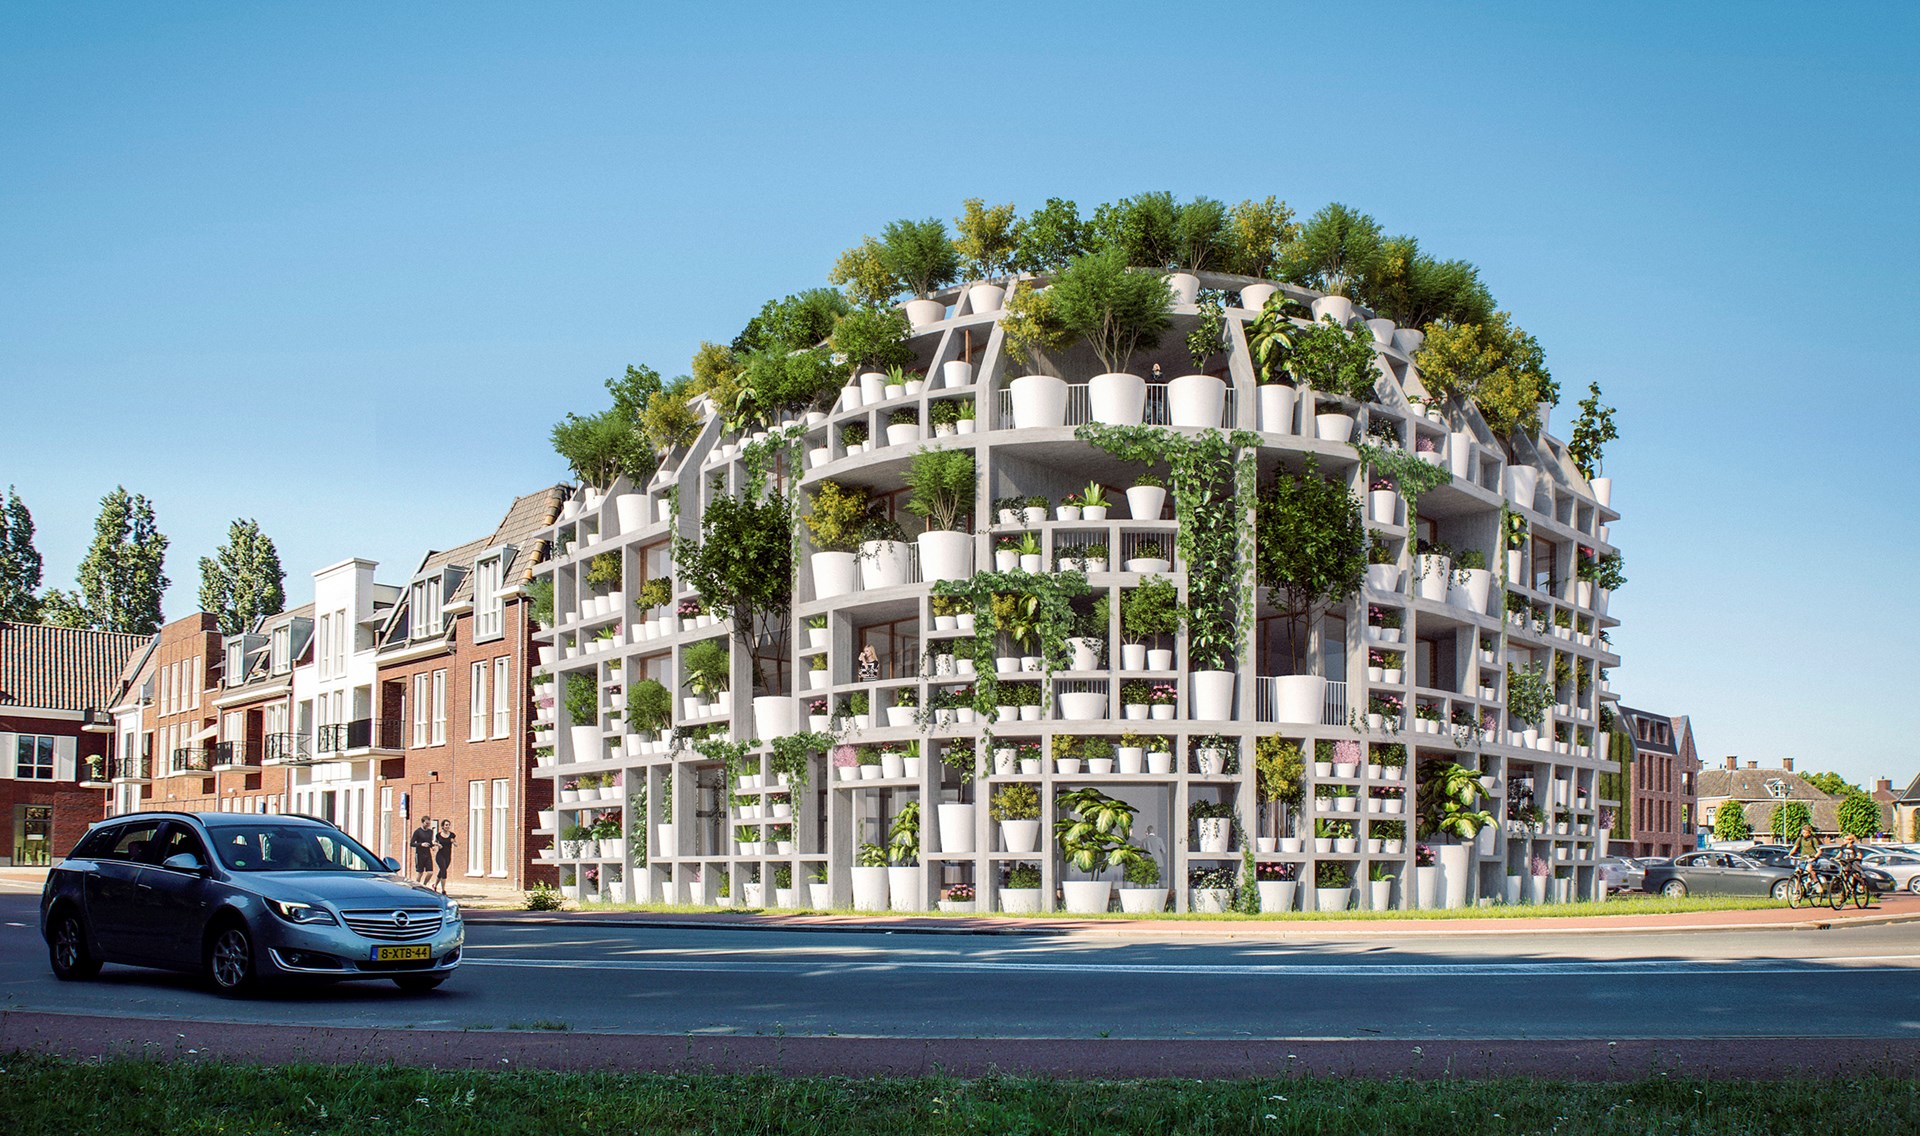 Mvrdvがオランダで手がける Green Villa 外装を植物用ラックにして緑のファサードを構築 Webマガジン Axis デザインのwebメディア